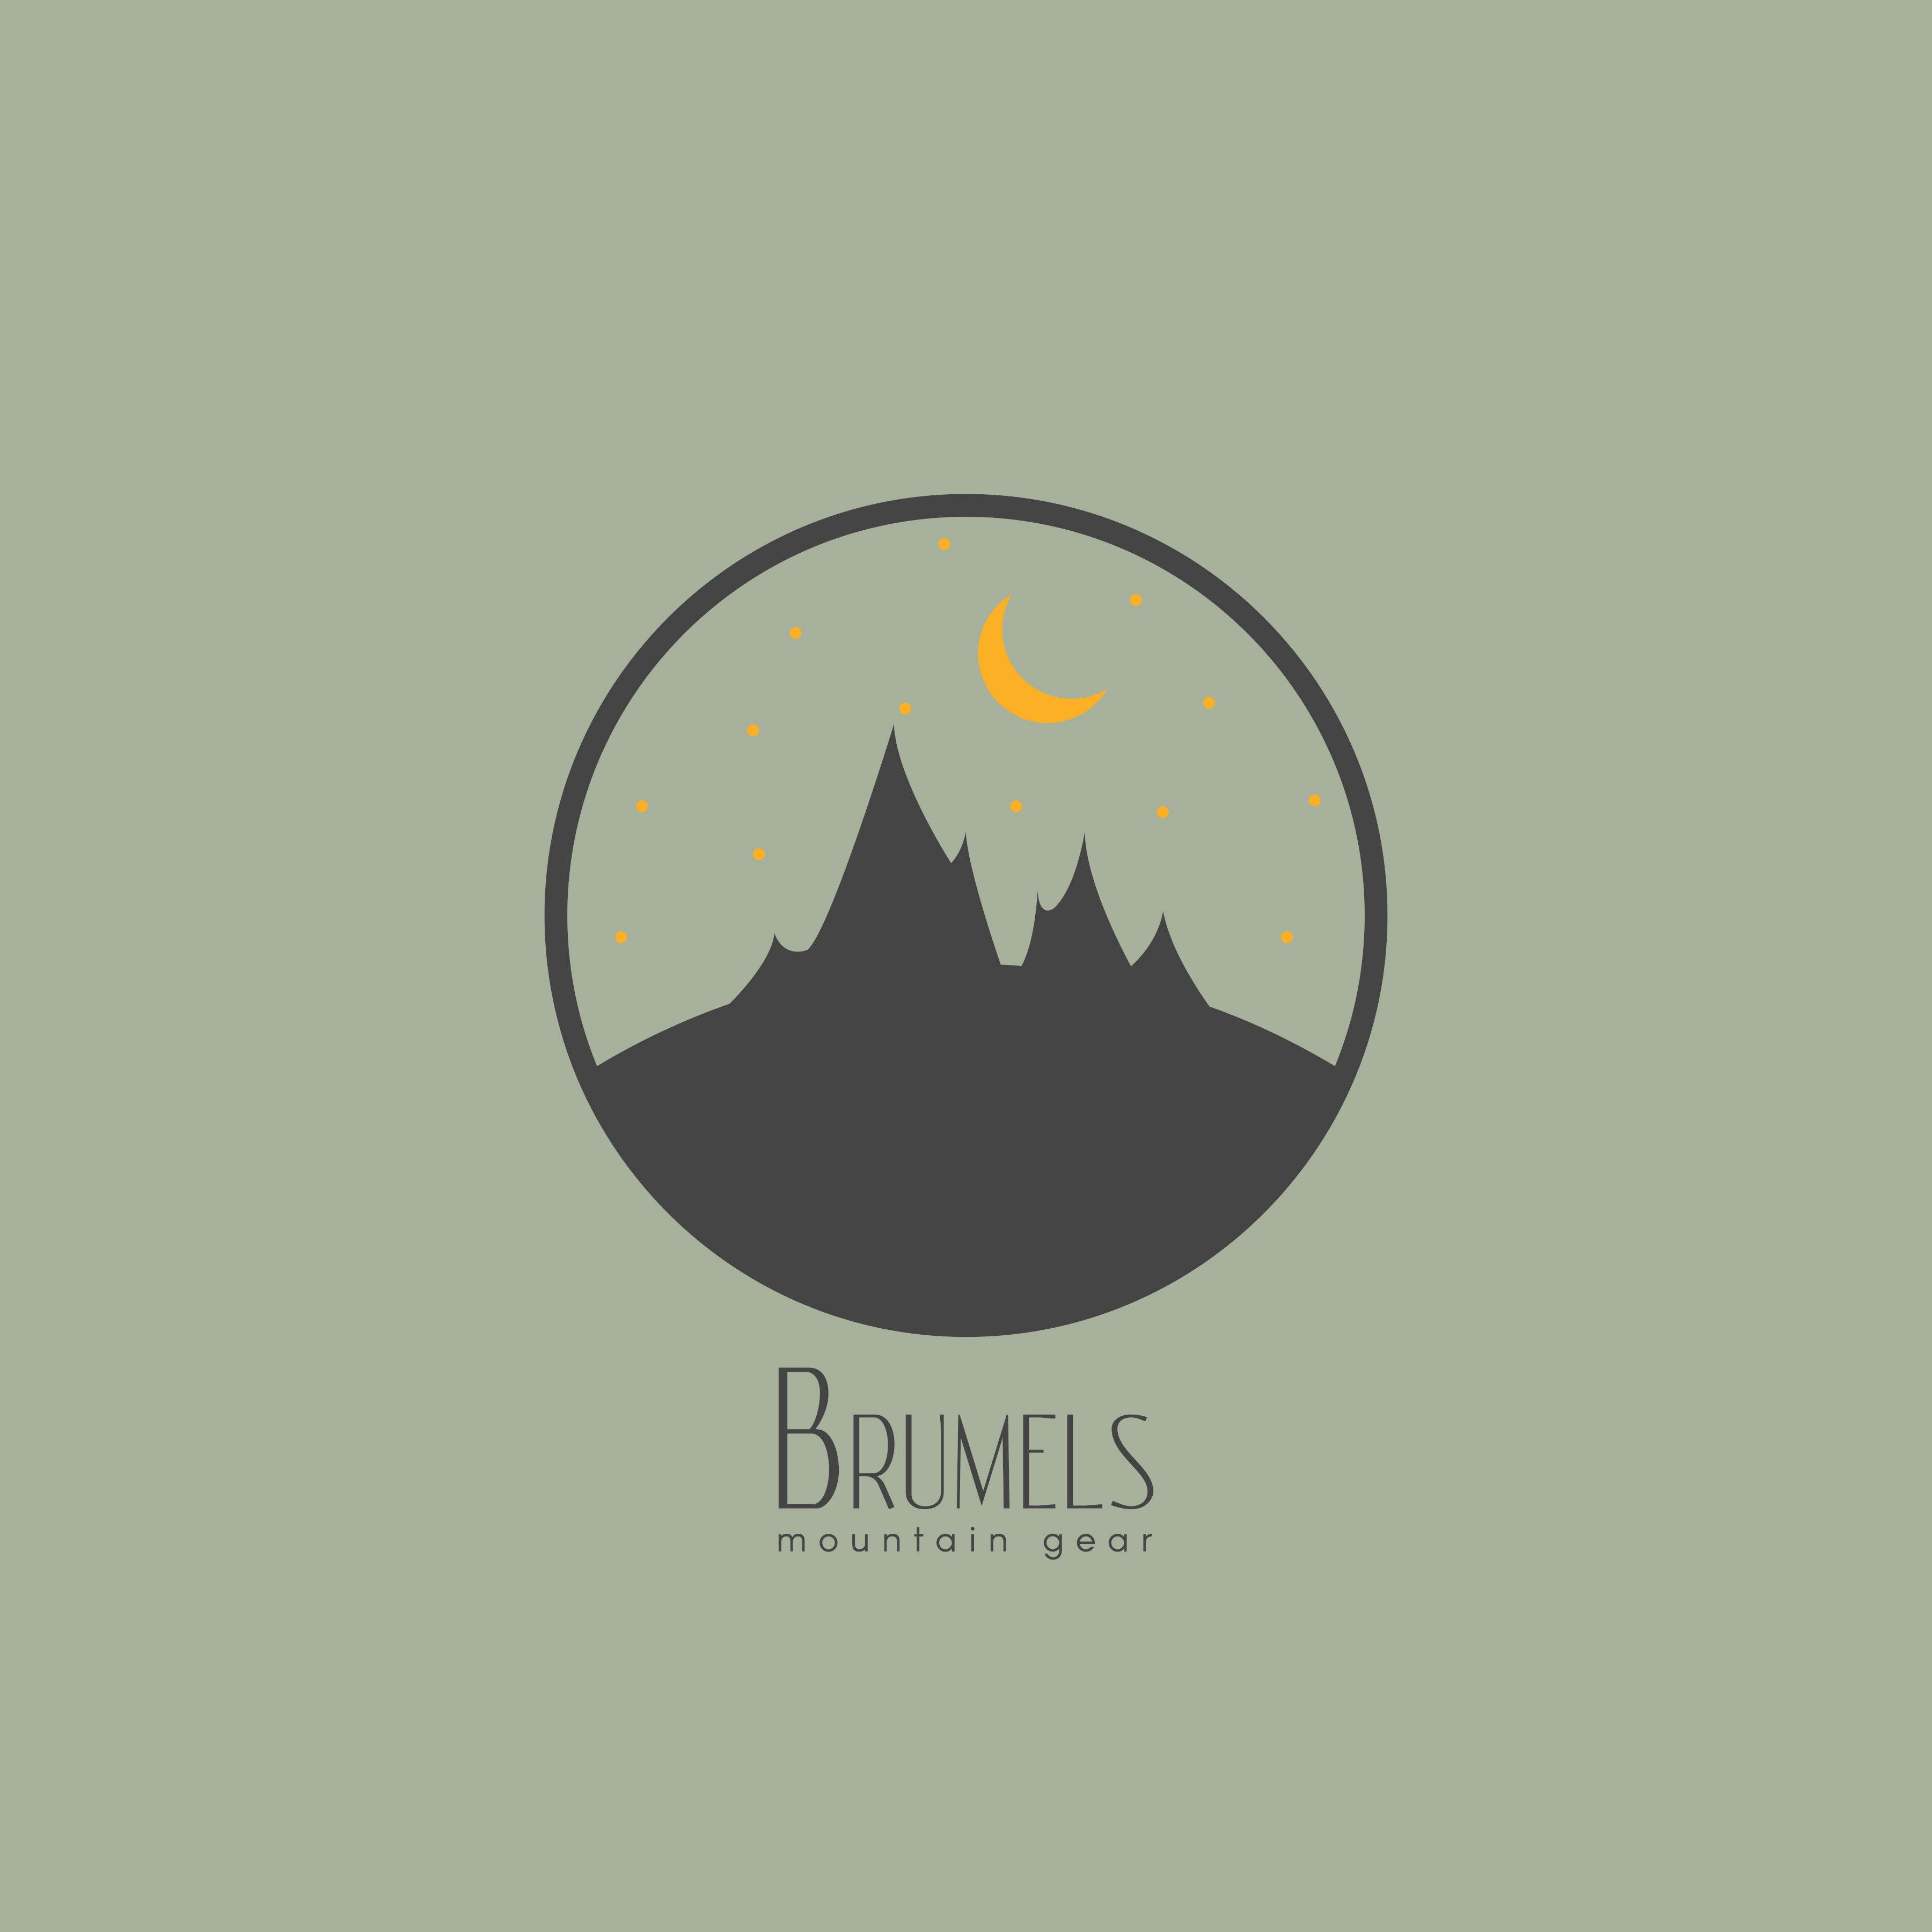 Black Mountain in Circle Logo - Brumels mountain gear, mountain, circle, logo, hiking, moon, stars ...